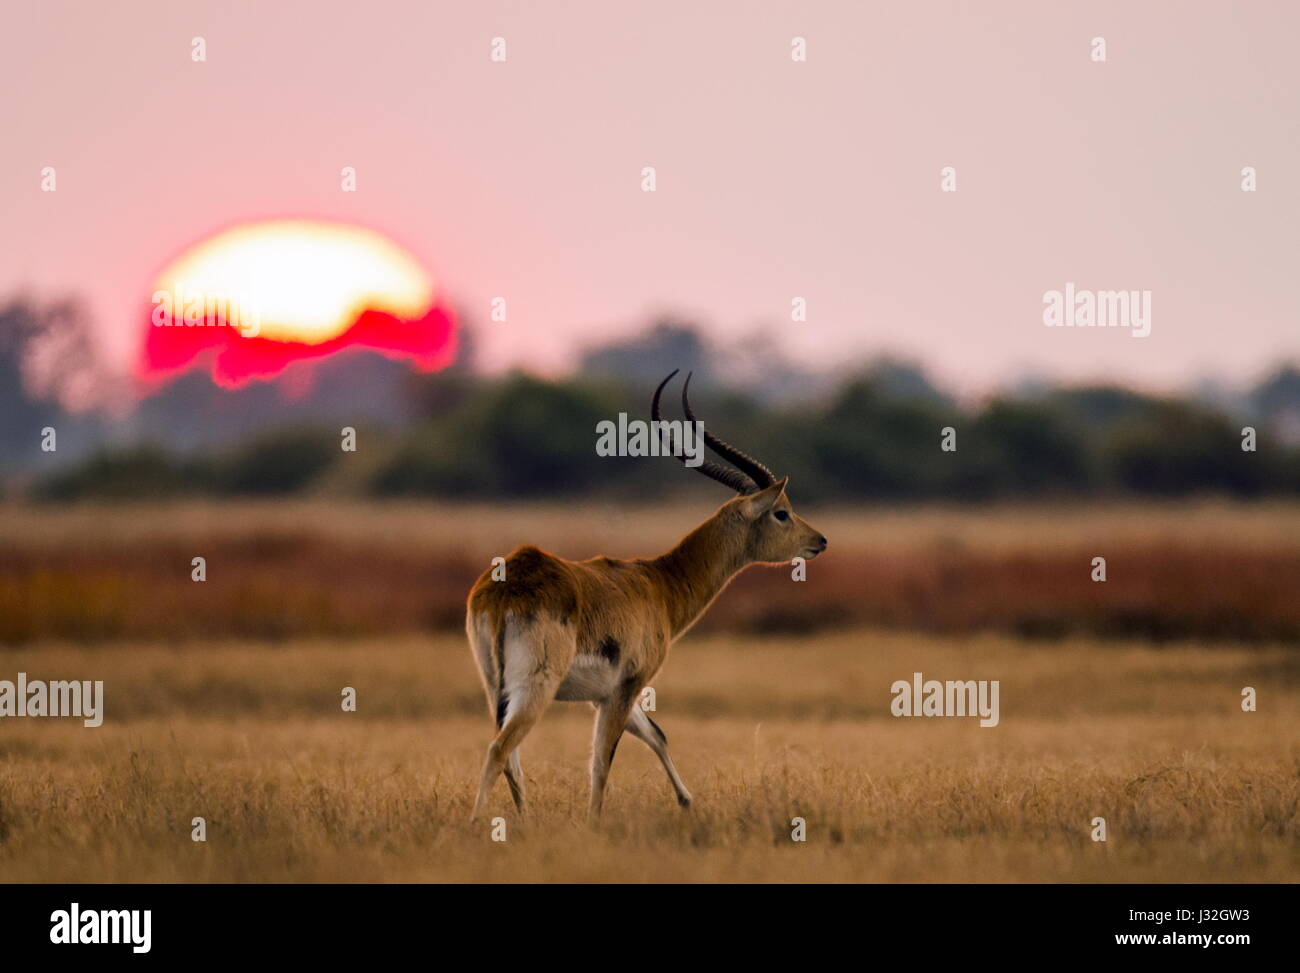 Antilope steht vor dem Hintergrund einer großen Sonnenaufgangssonne. Botswana. Okavango Delta. Stockfoto